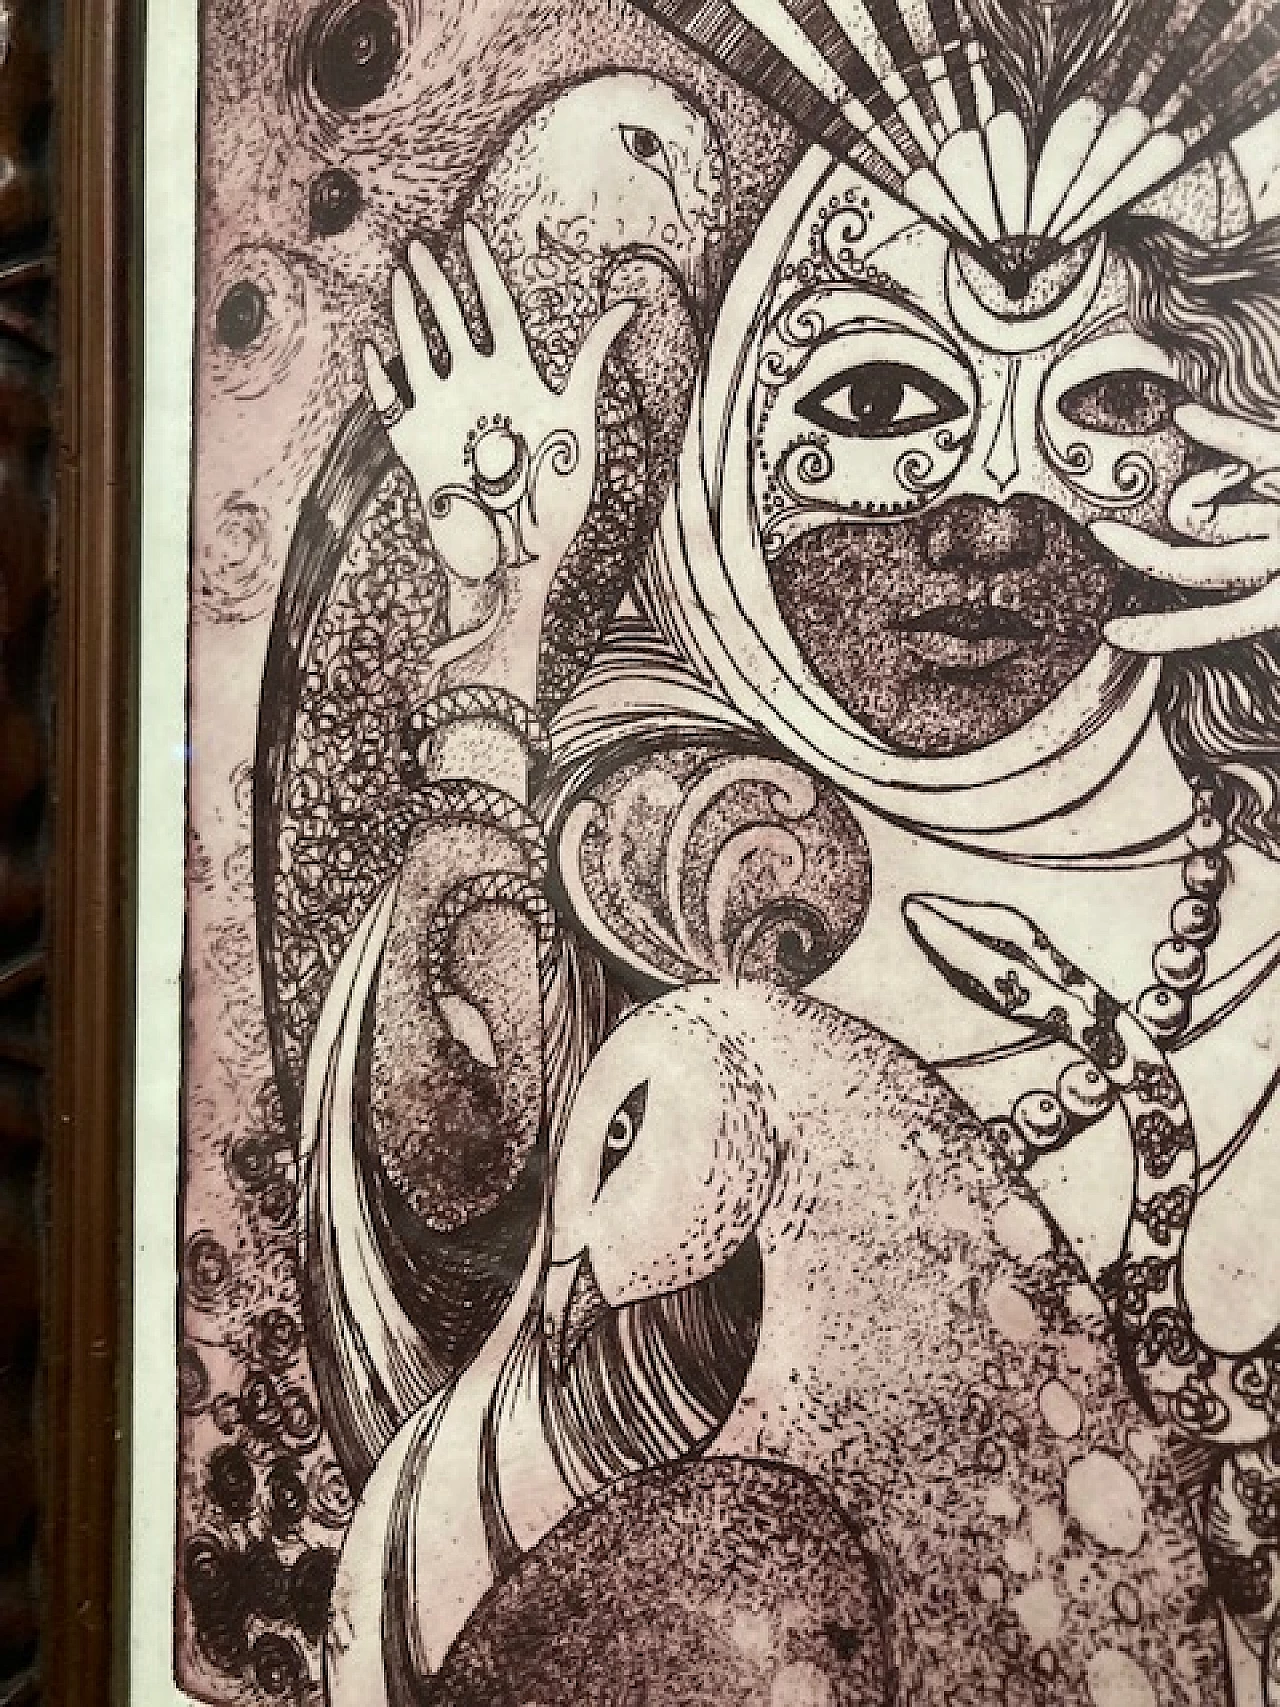 Conchita, Magick Woman, engraving 15